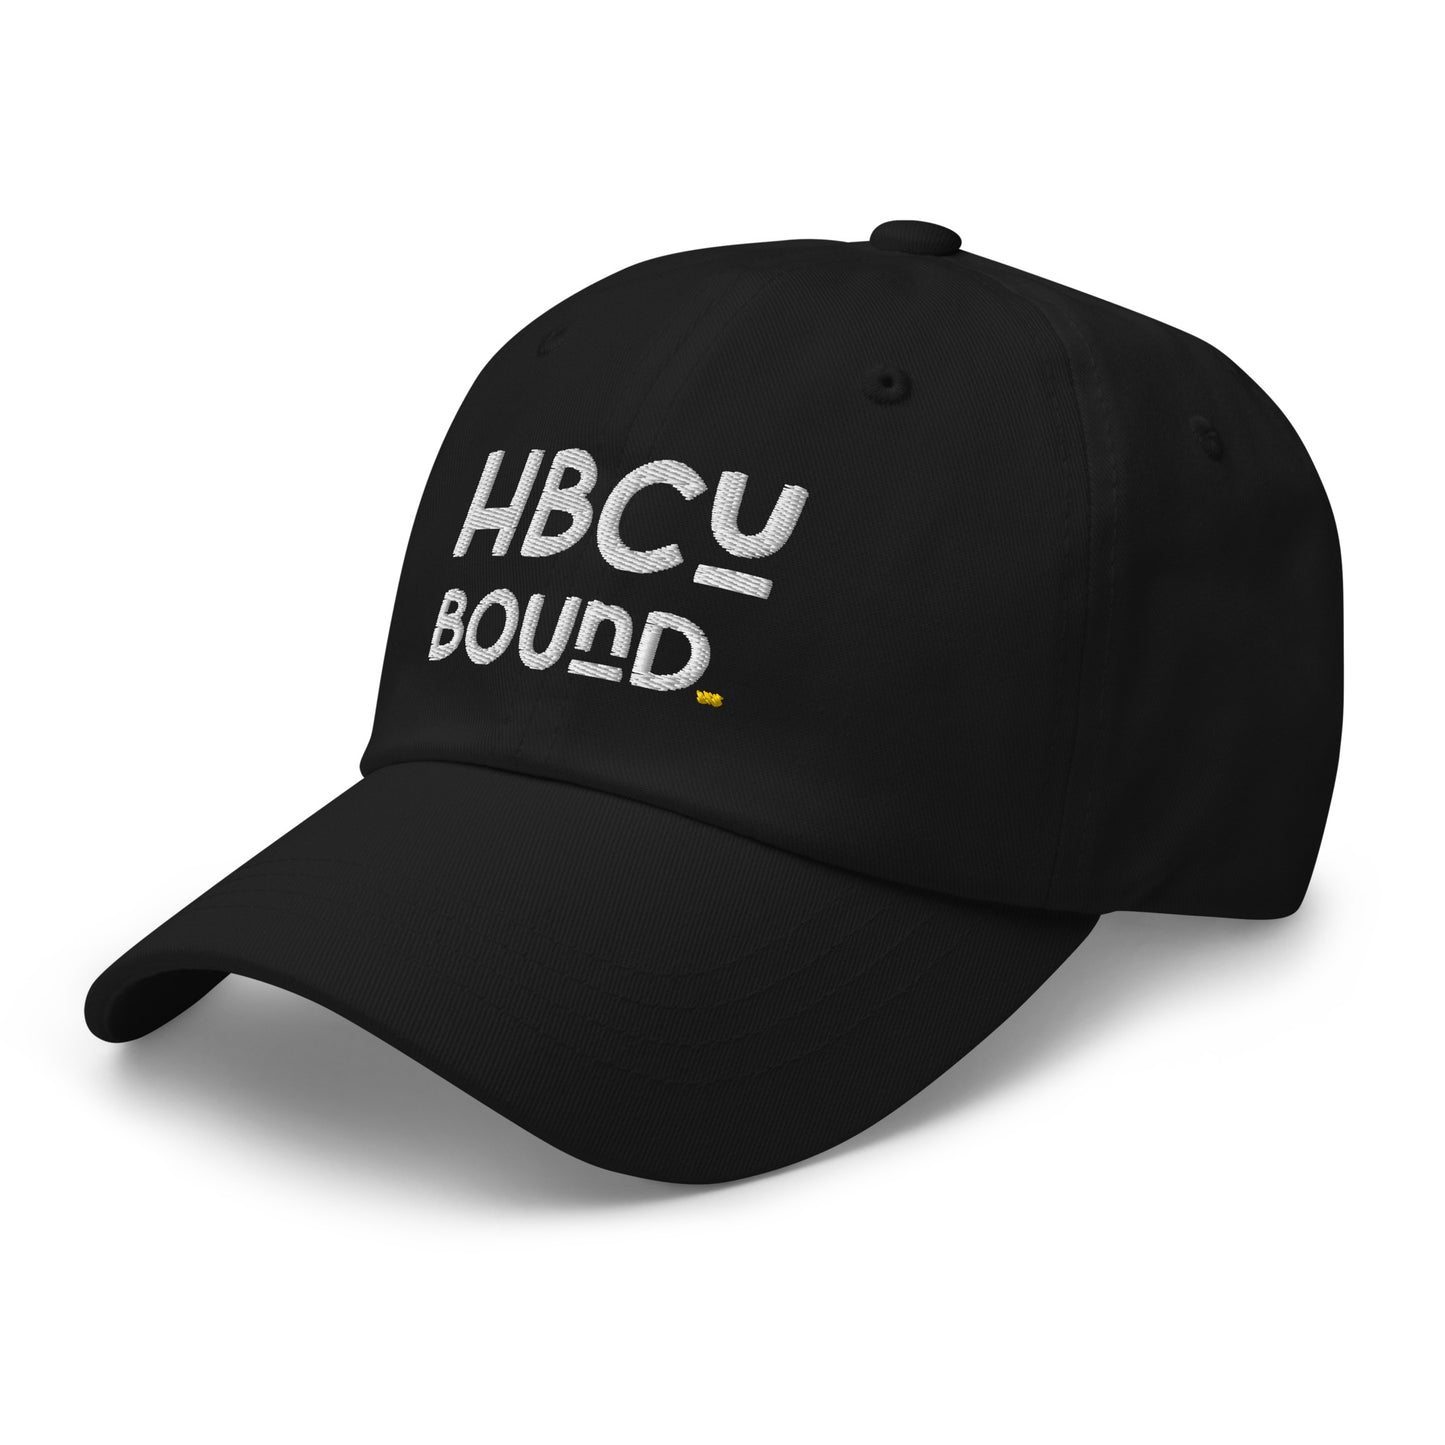 Bound - Dad Hat